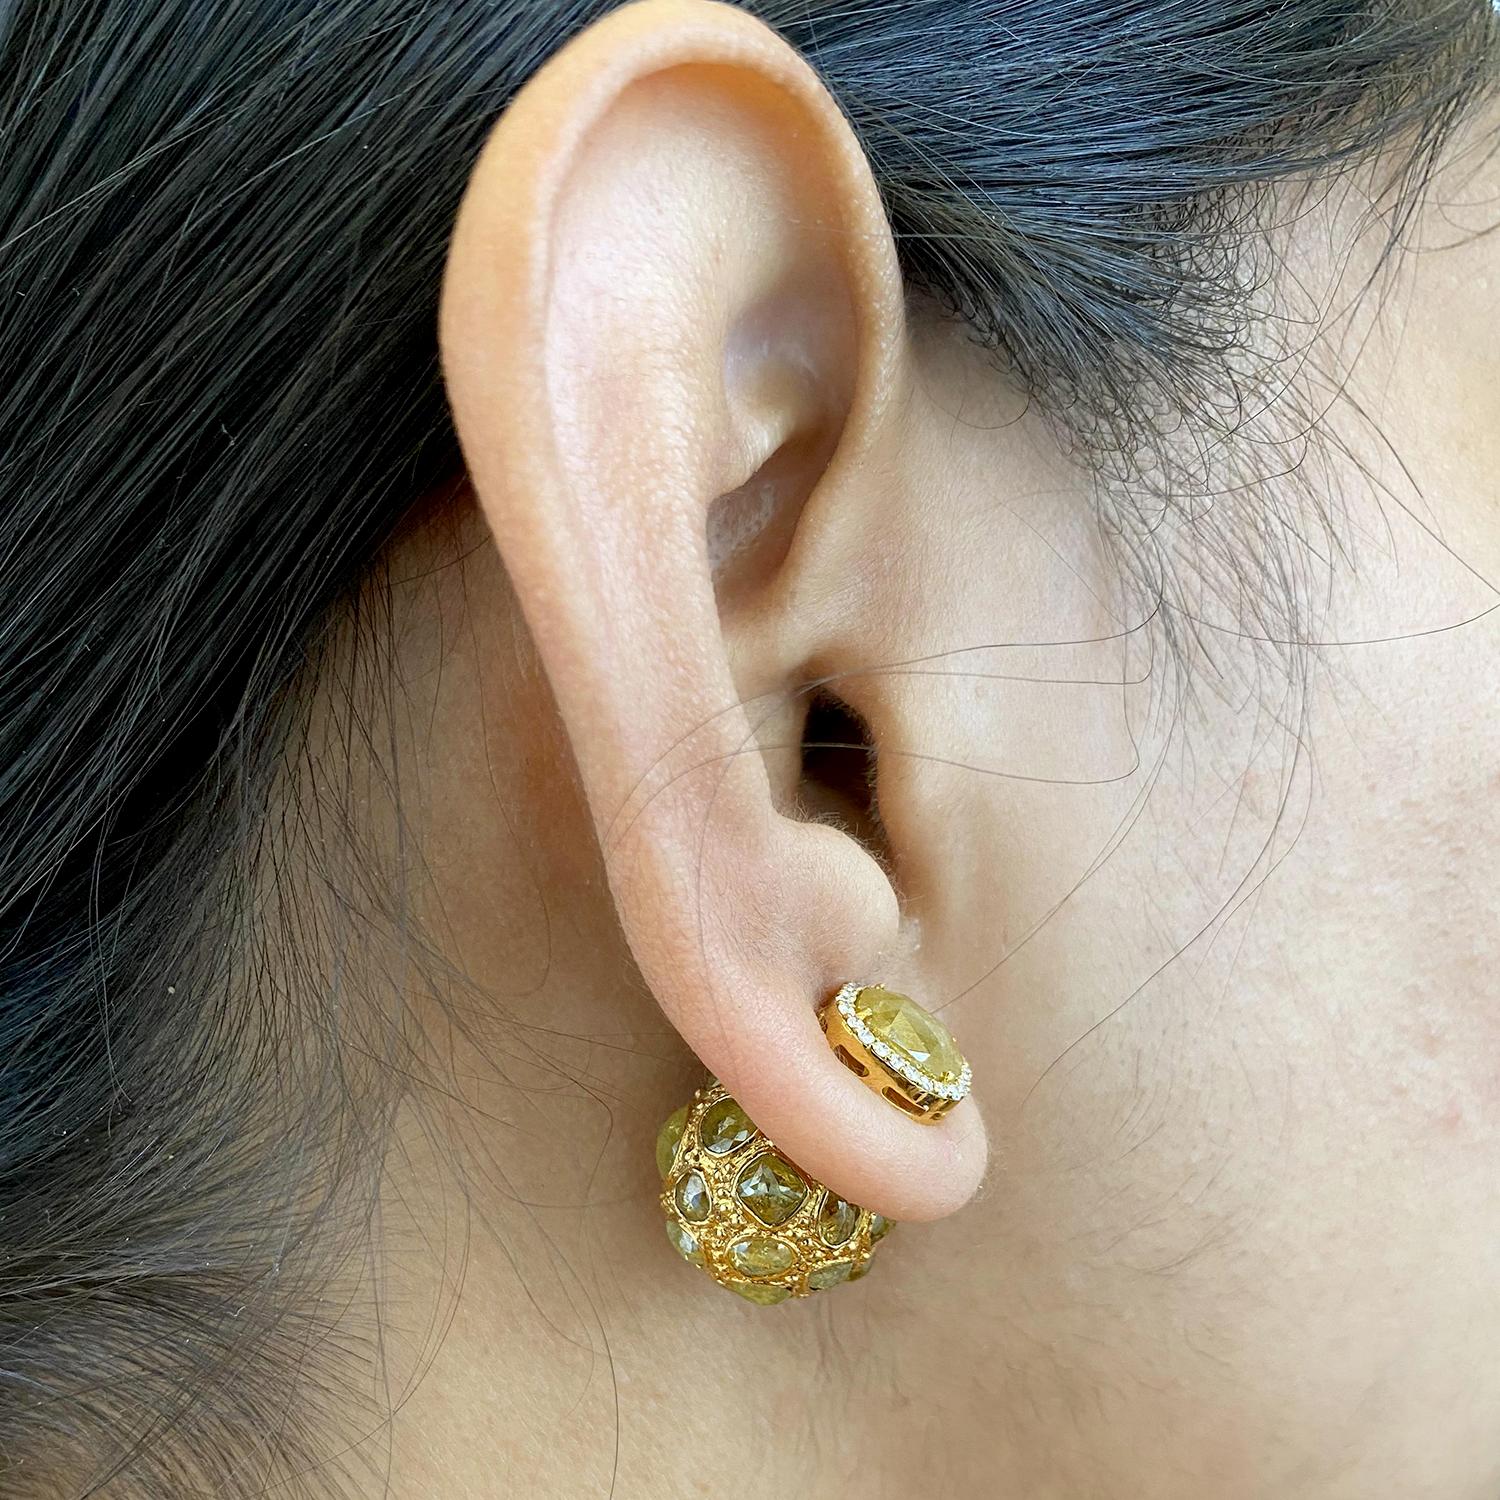 Diese Ohrringe sind aus 18 Karat Gold gefertigt und mit Diamanten in Form von Eisdiamanten besetzt. Eisdiamanten sind die beliebteste Wahl für Diamantschmuck. Die Kombination aus schimmerndem Gold und funkelnden Diamanten verleiht diesen Ohrringen